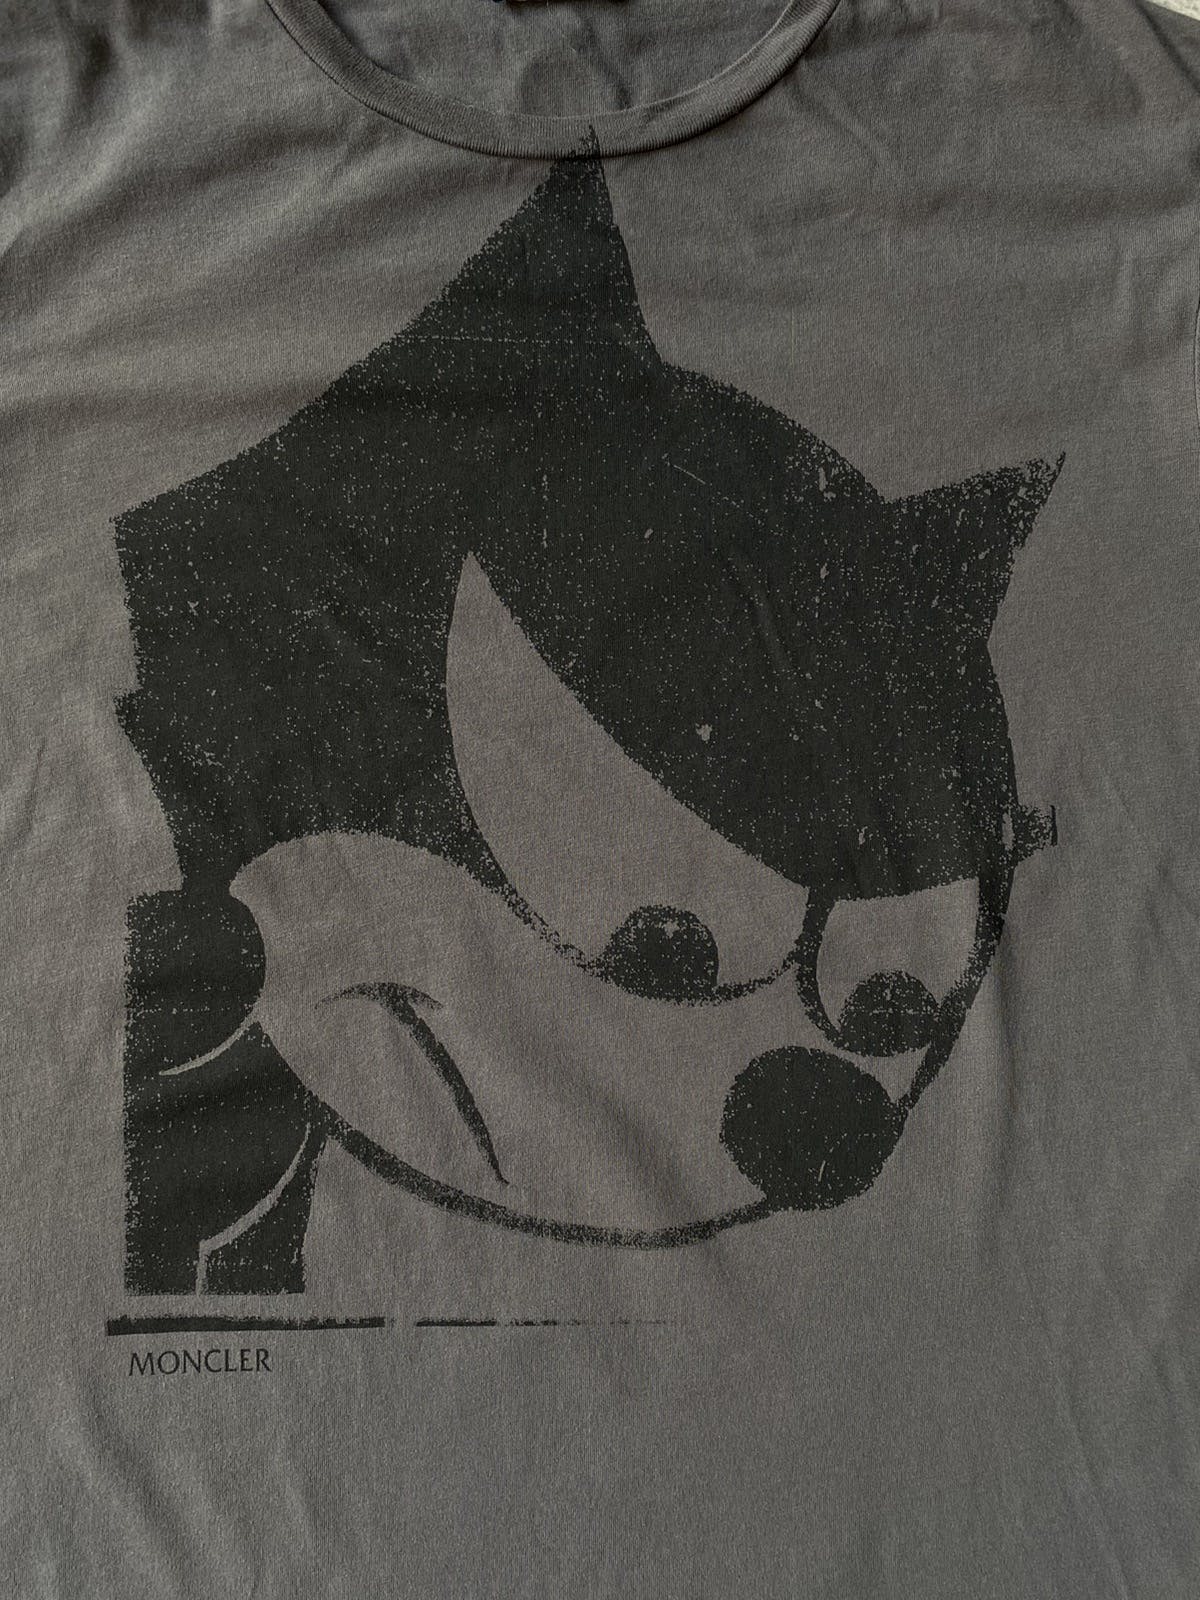 Moncler X Felix The Cat T Shirt - 3